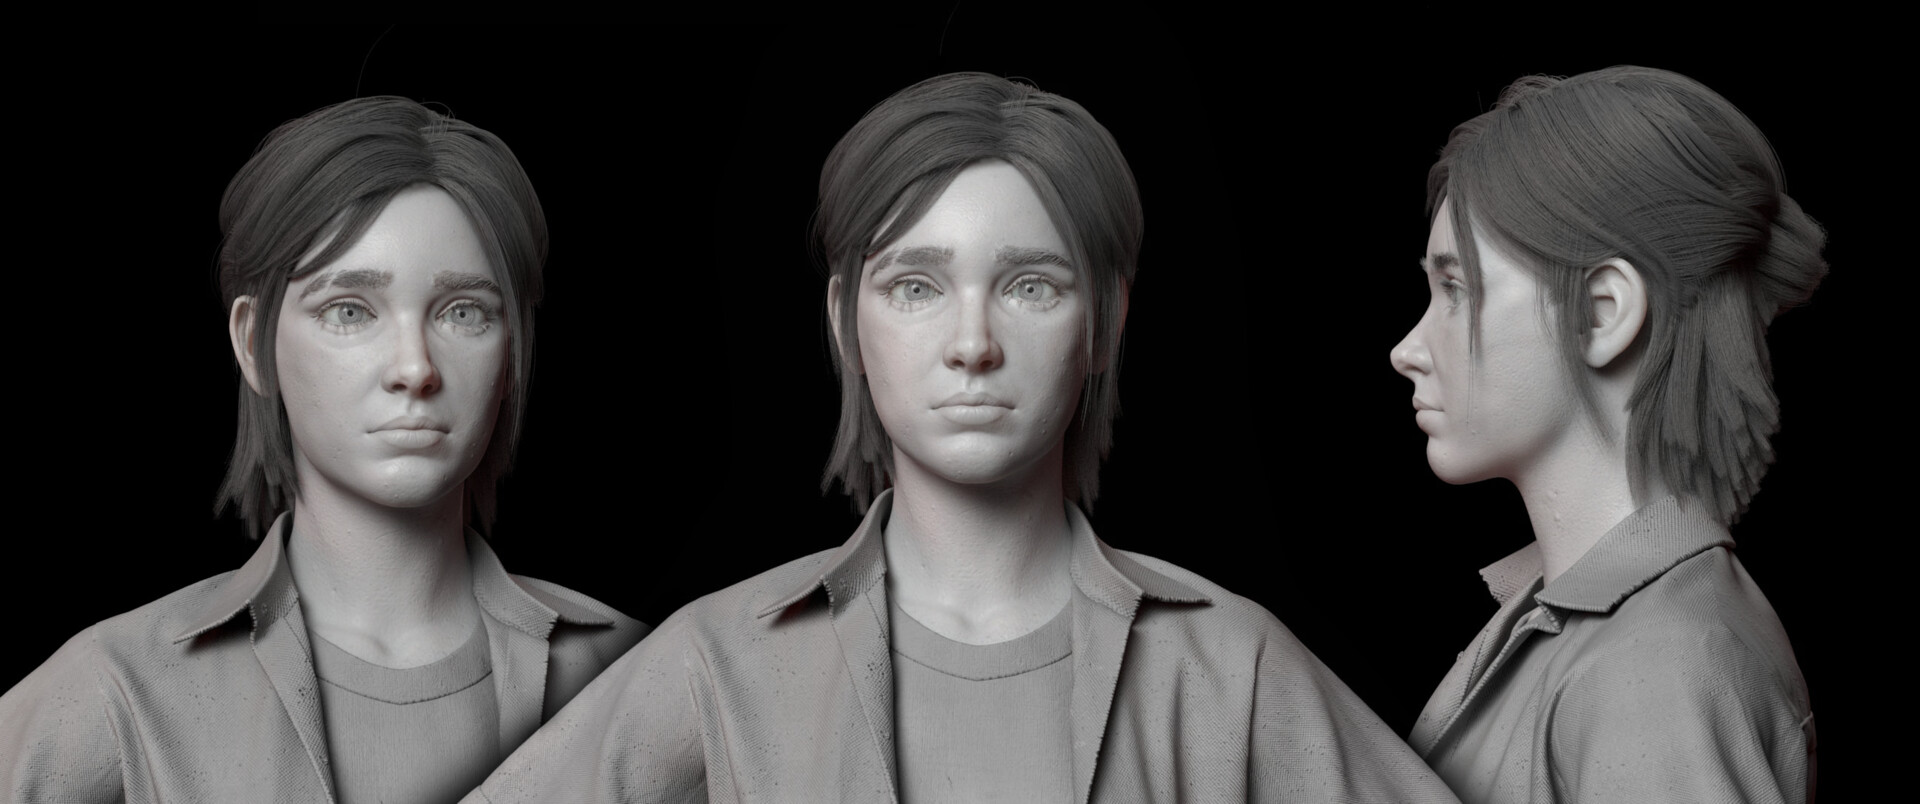 ArtStation - The Last of Us: Part II Early Ellie Hairstyles